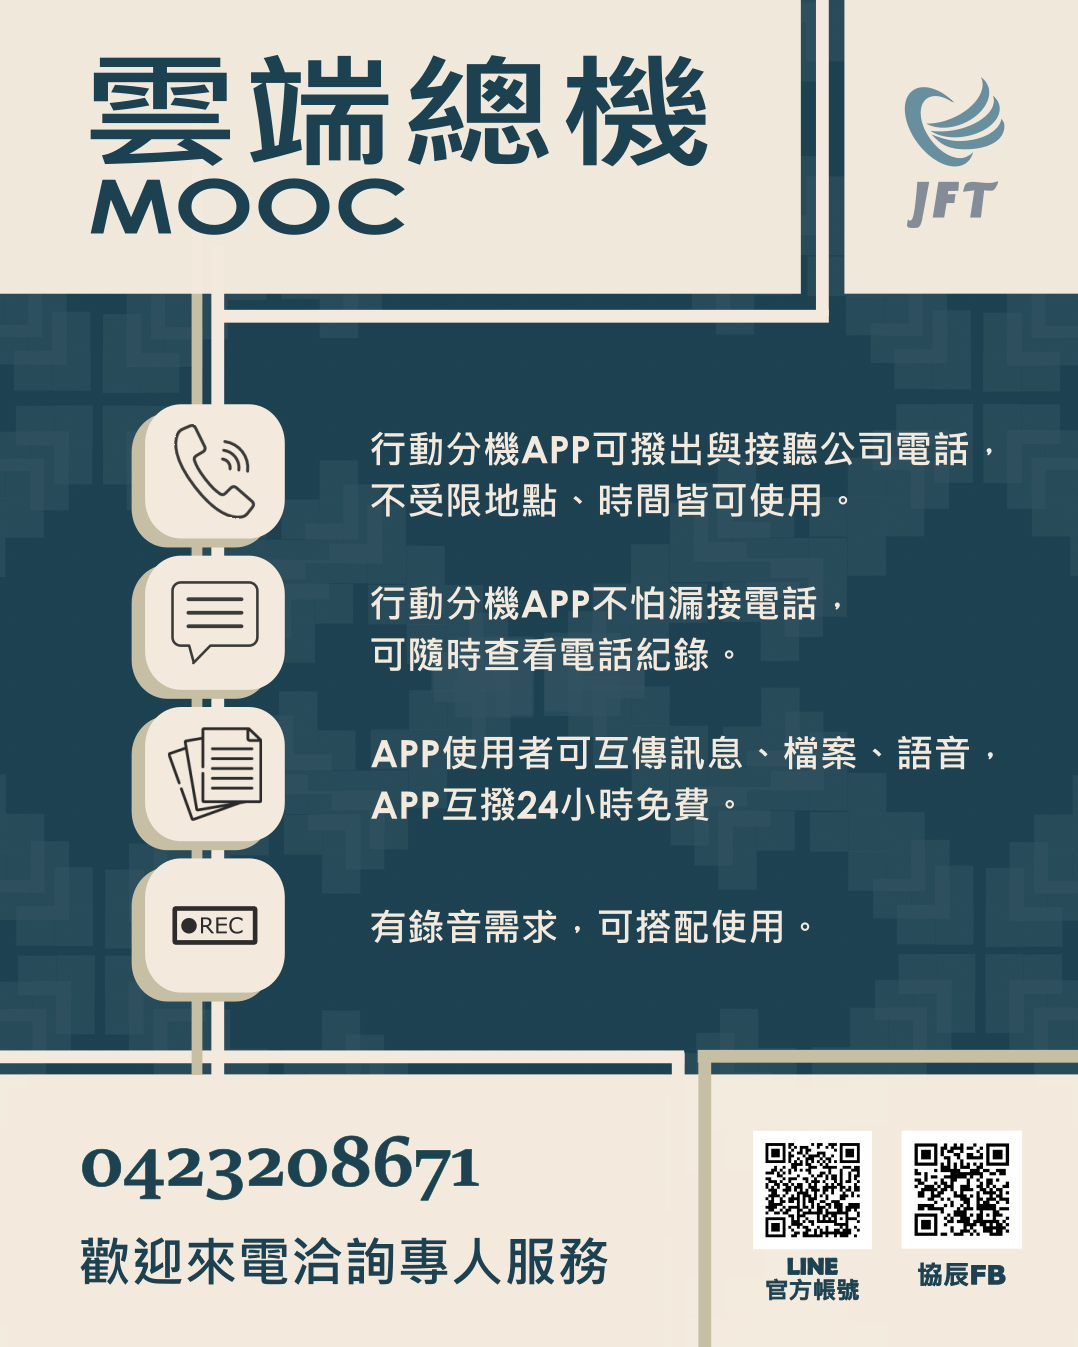 MOOC雲端總機DM，行動分機APP不限地點時間皆可使用。